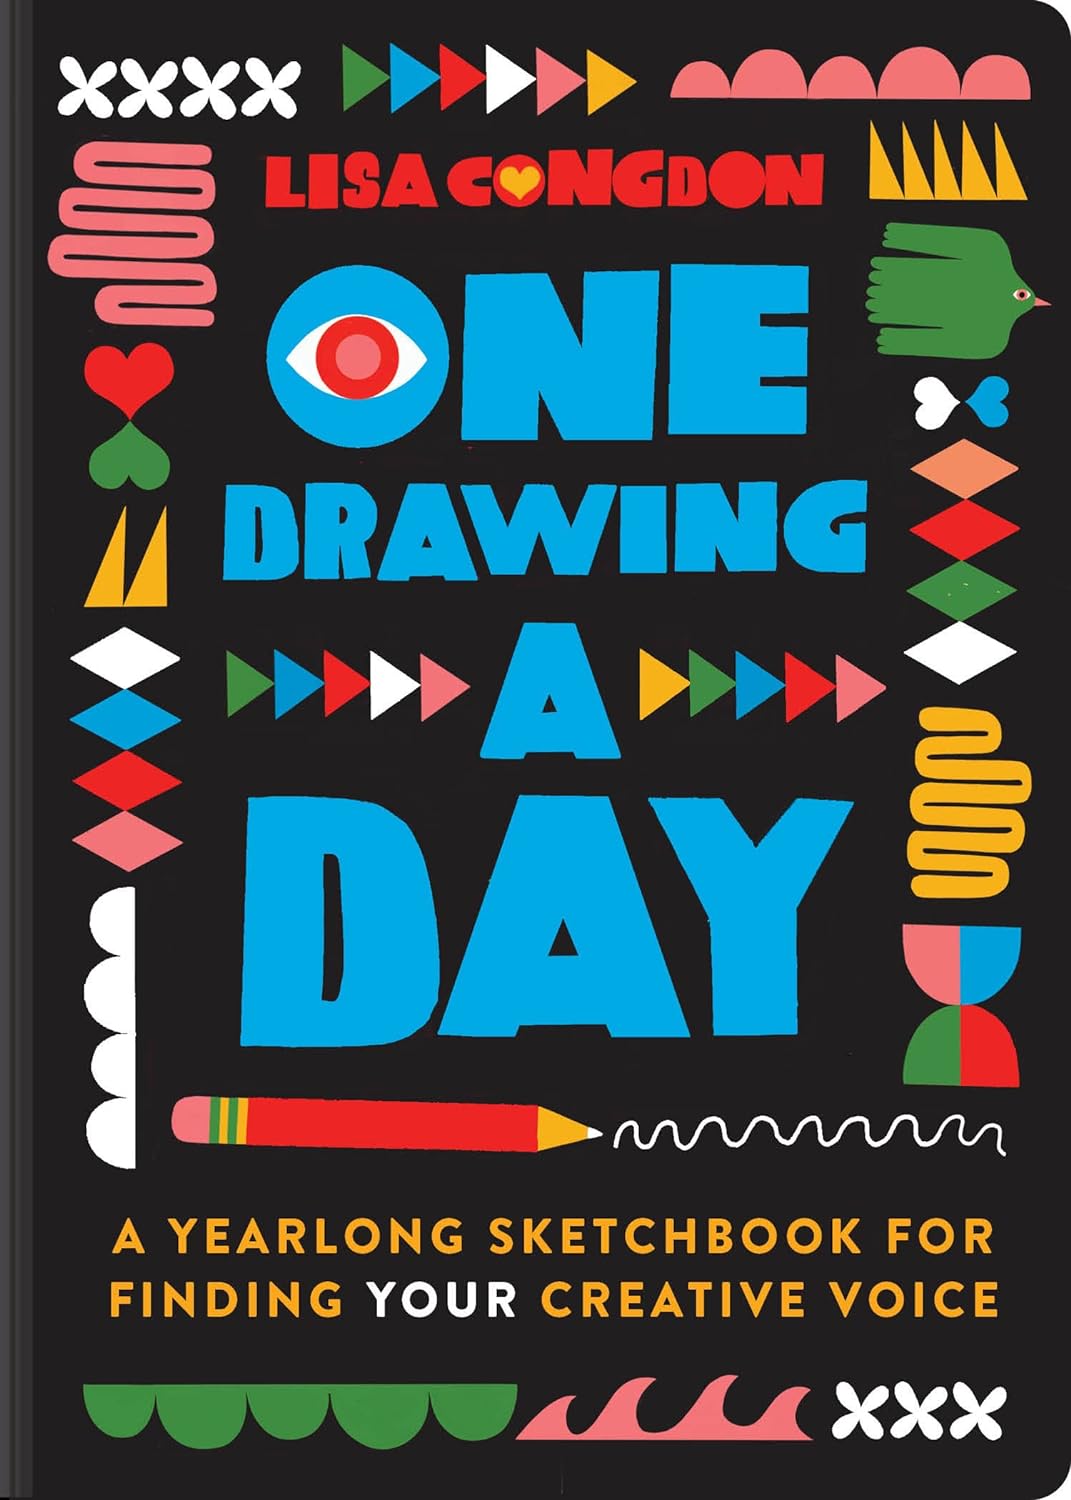 Draw Every Day, Draw Every Way by Lewis, Jennifer Orkin